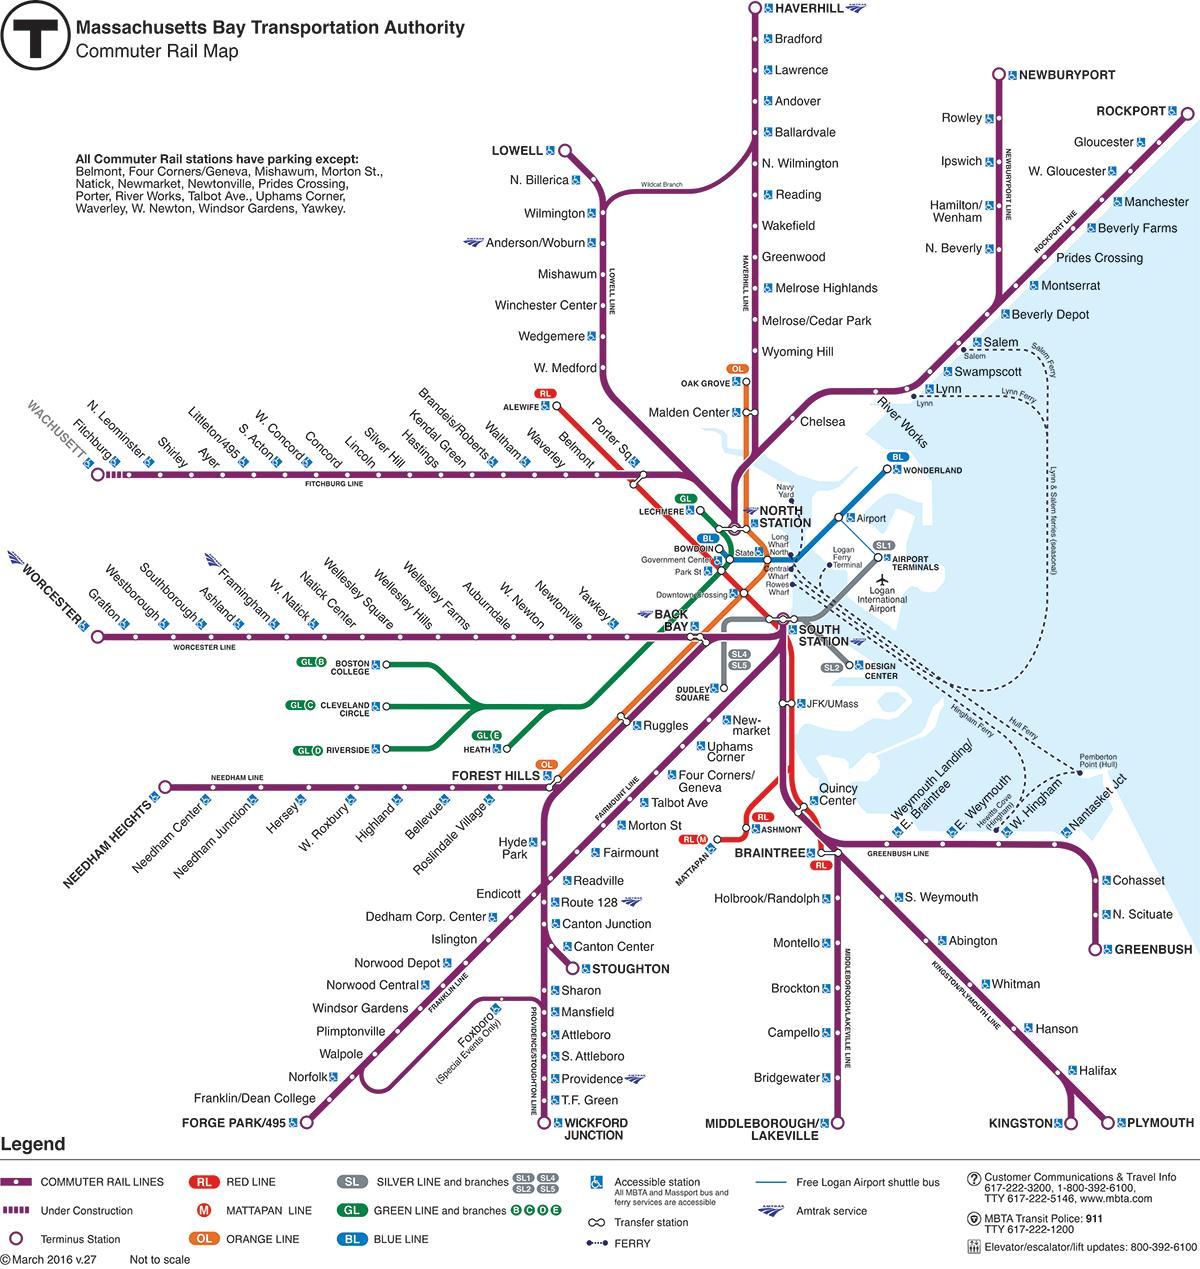 Boston tren istasyonu haritası